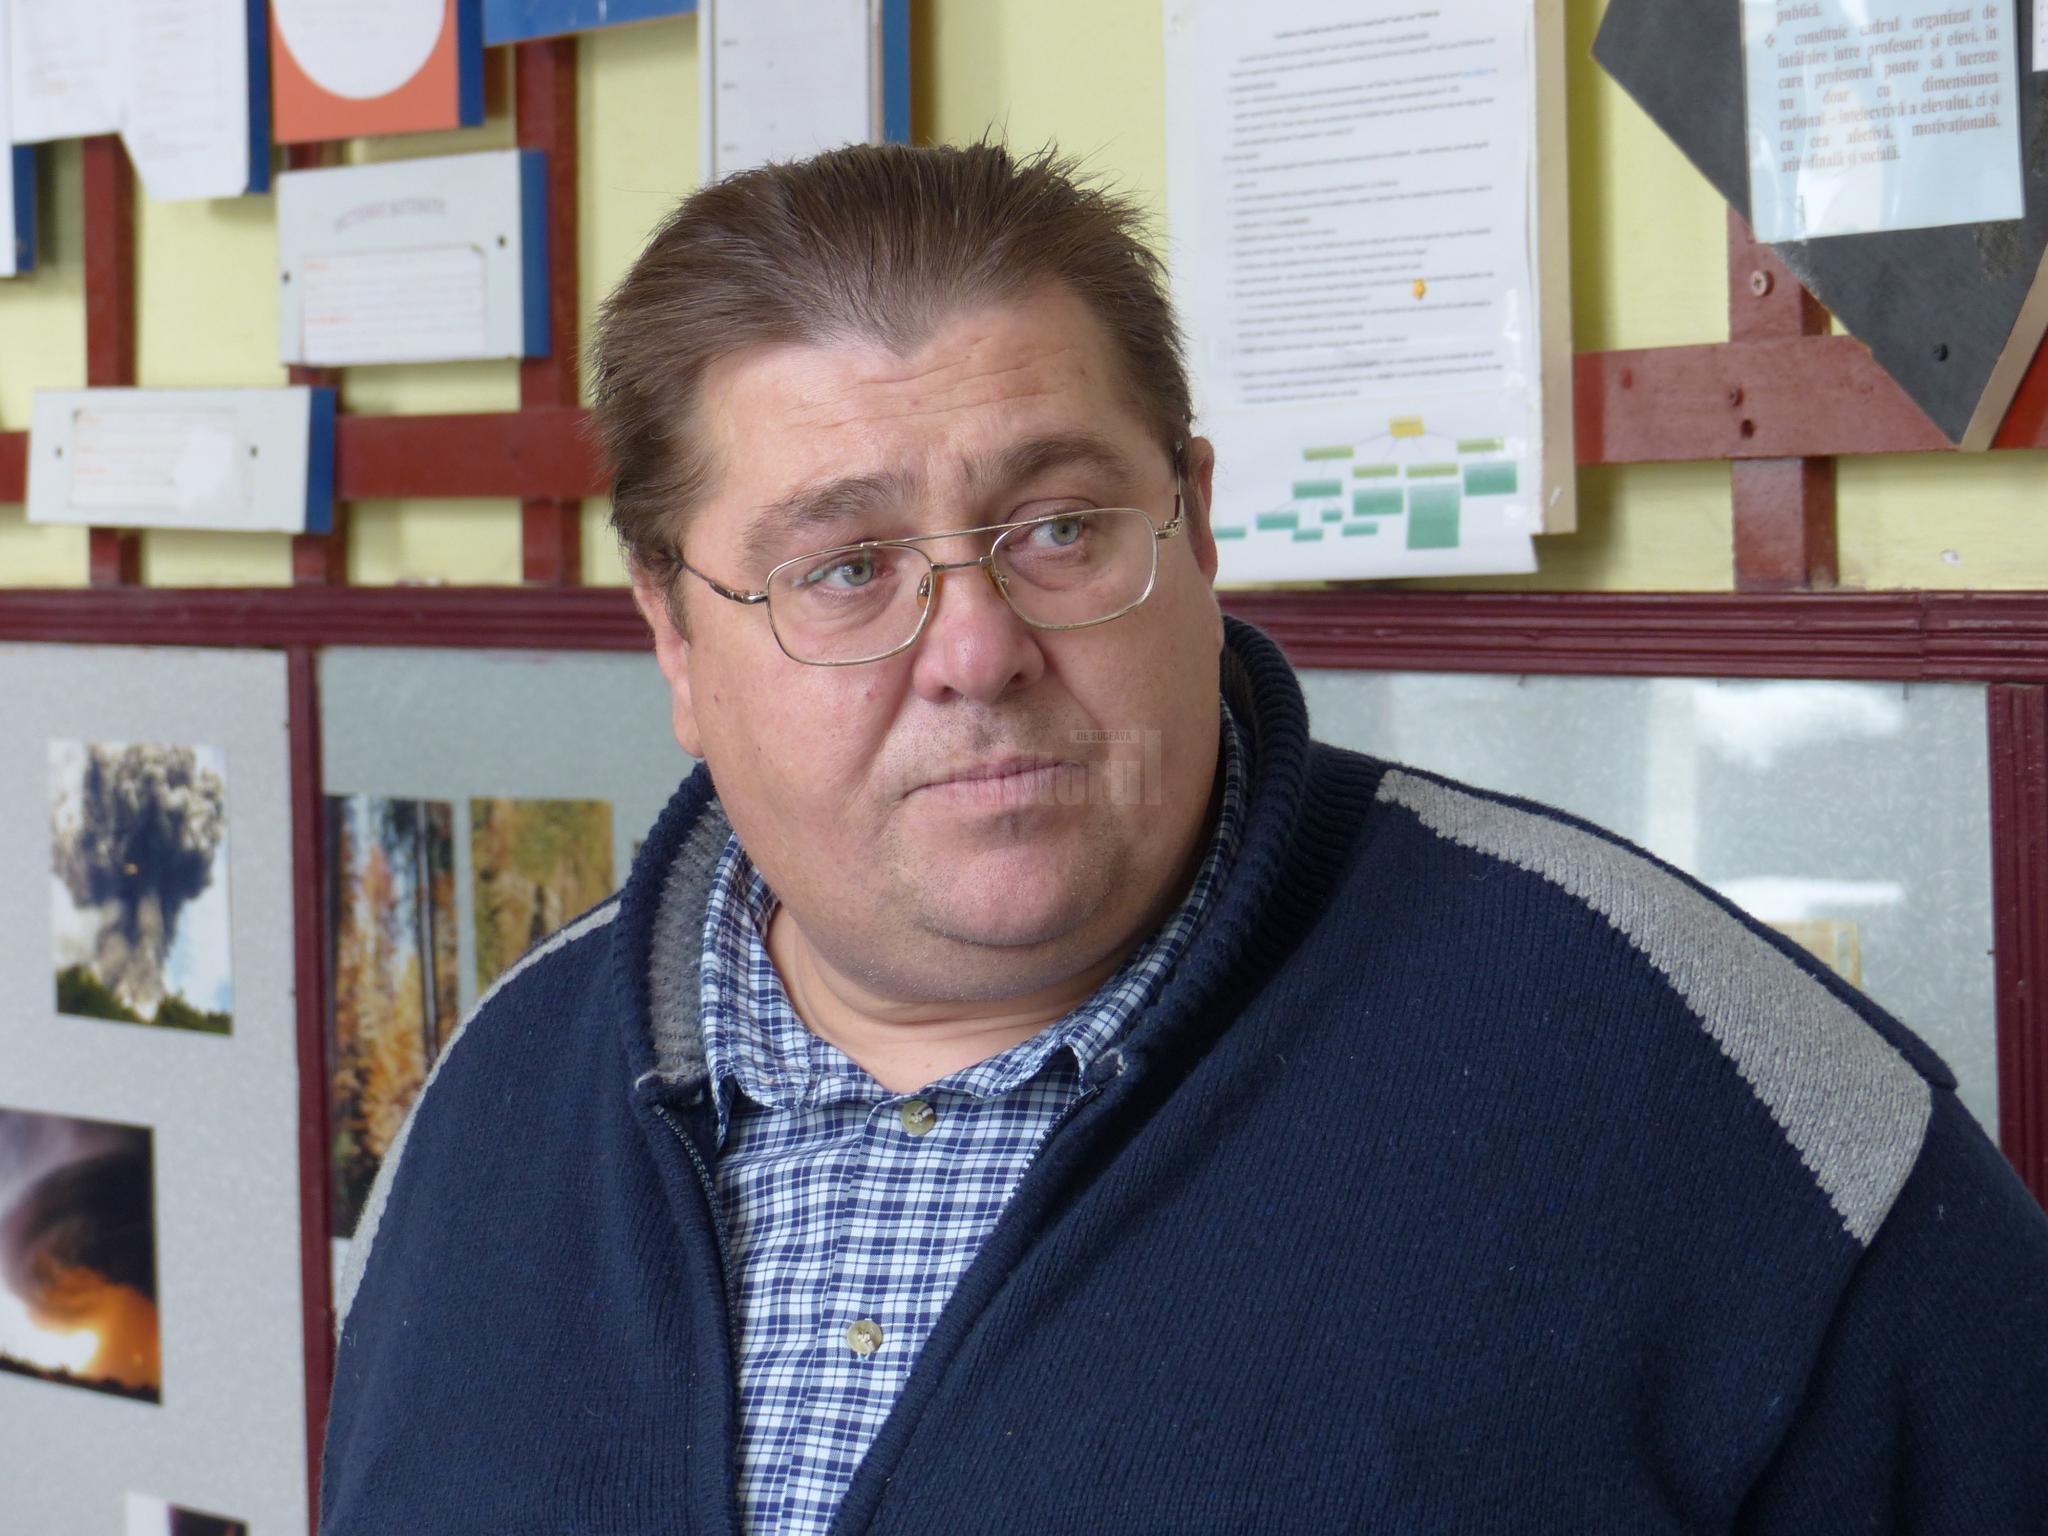  Directorul unui liceu a murit în timp ce era la Techirghiol, în concediu